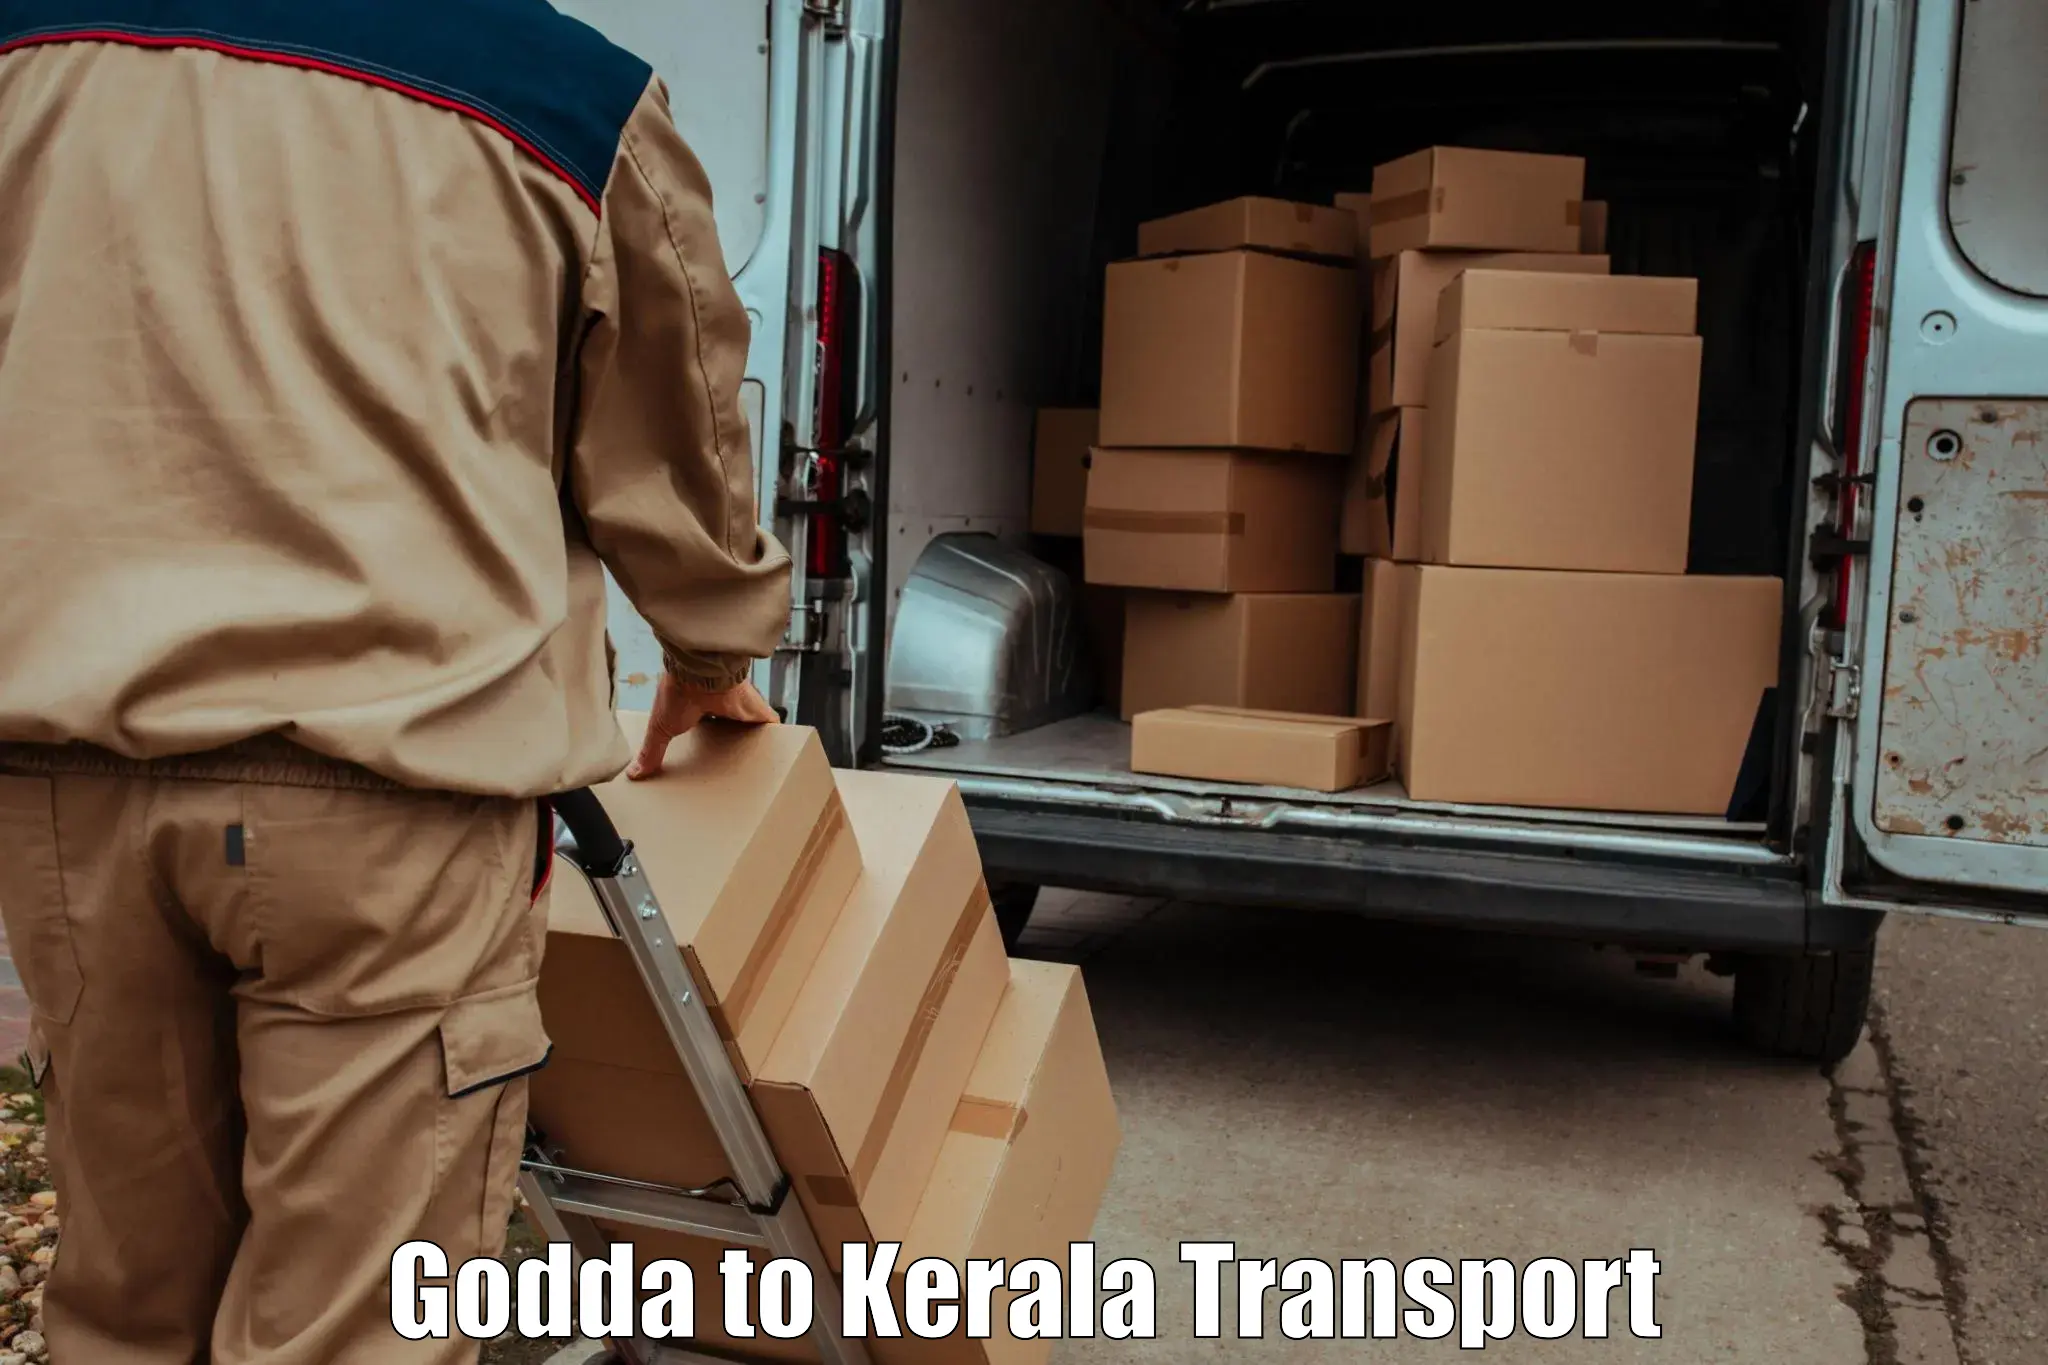 Transport services Godda to Chavassery